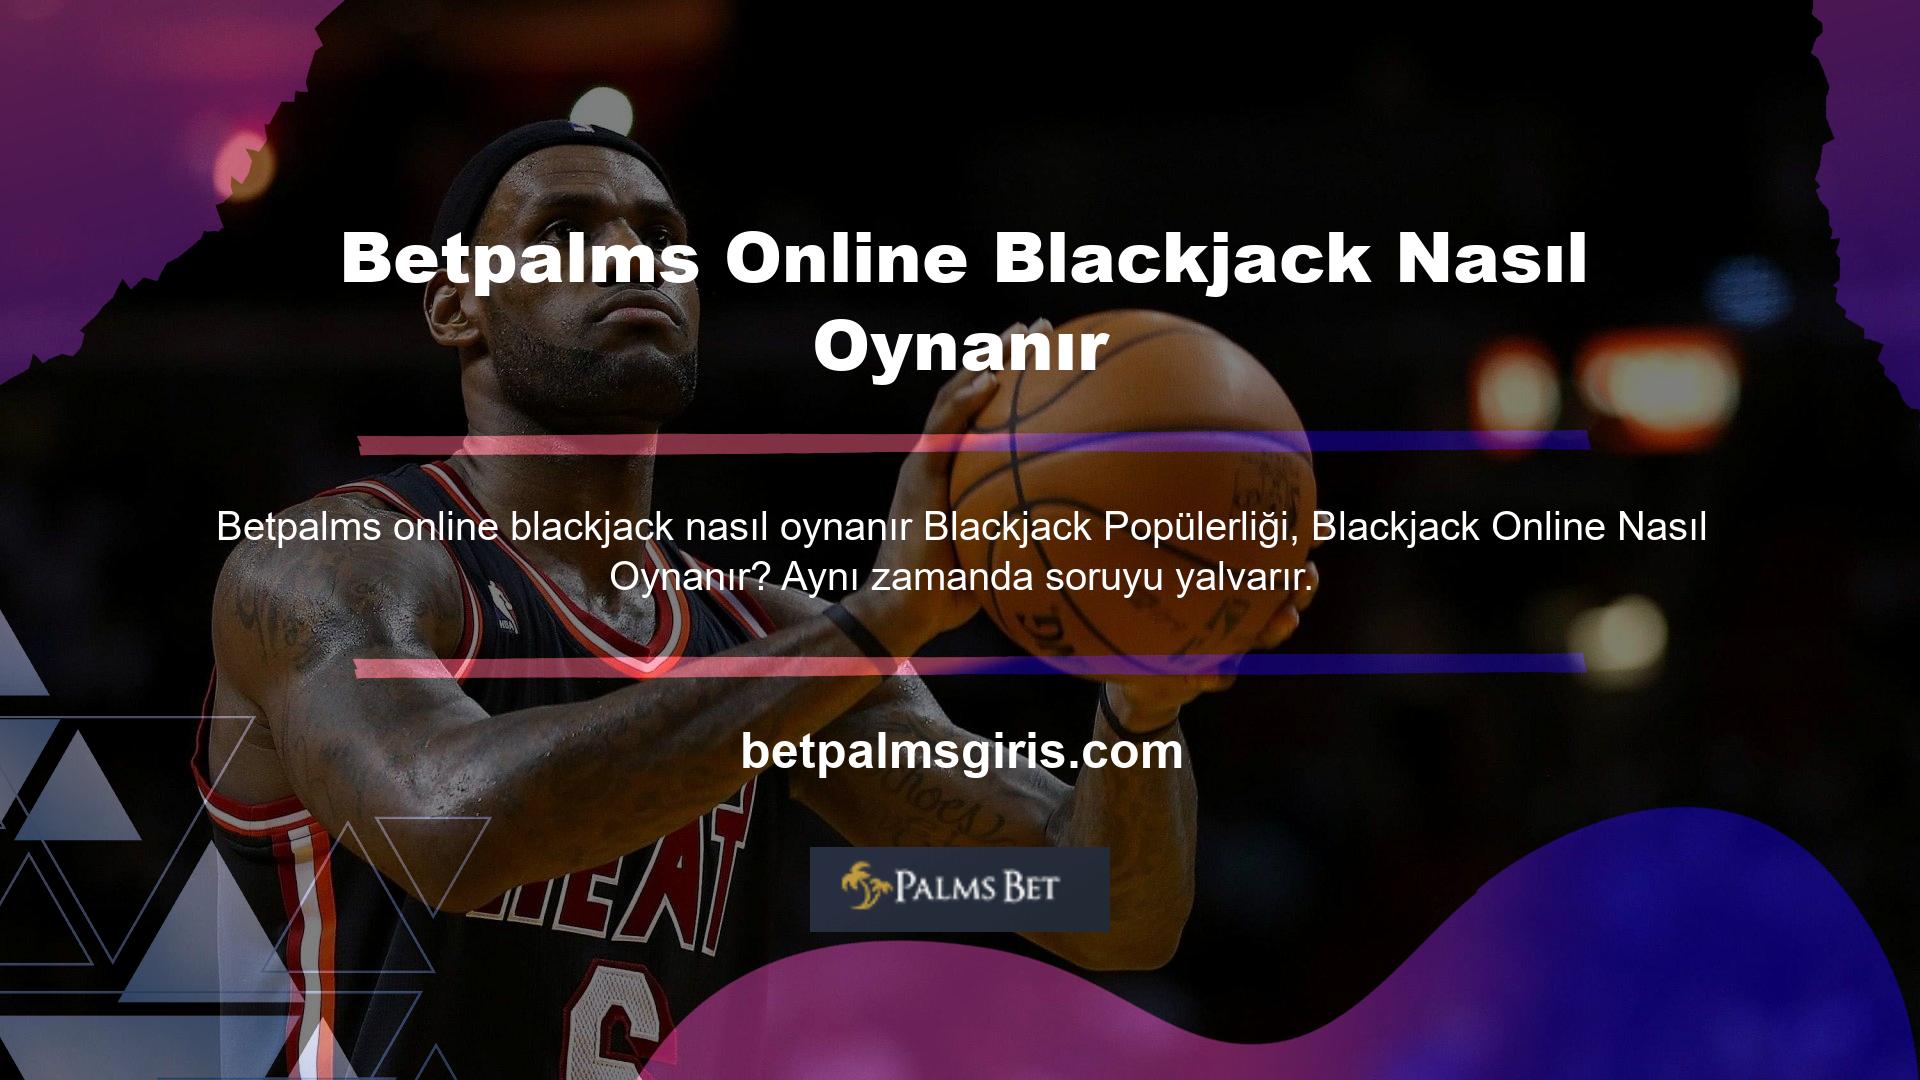 Özellikle Betpalms yeni gelenler, site yüksek bahisli blackjack oyunları sunduğundan, sorduğumuz sorulara cevap arıyor